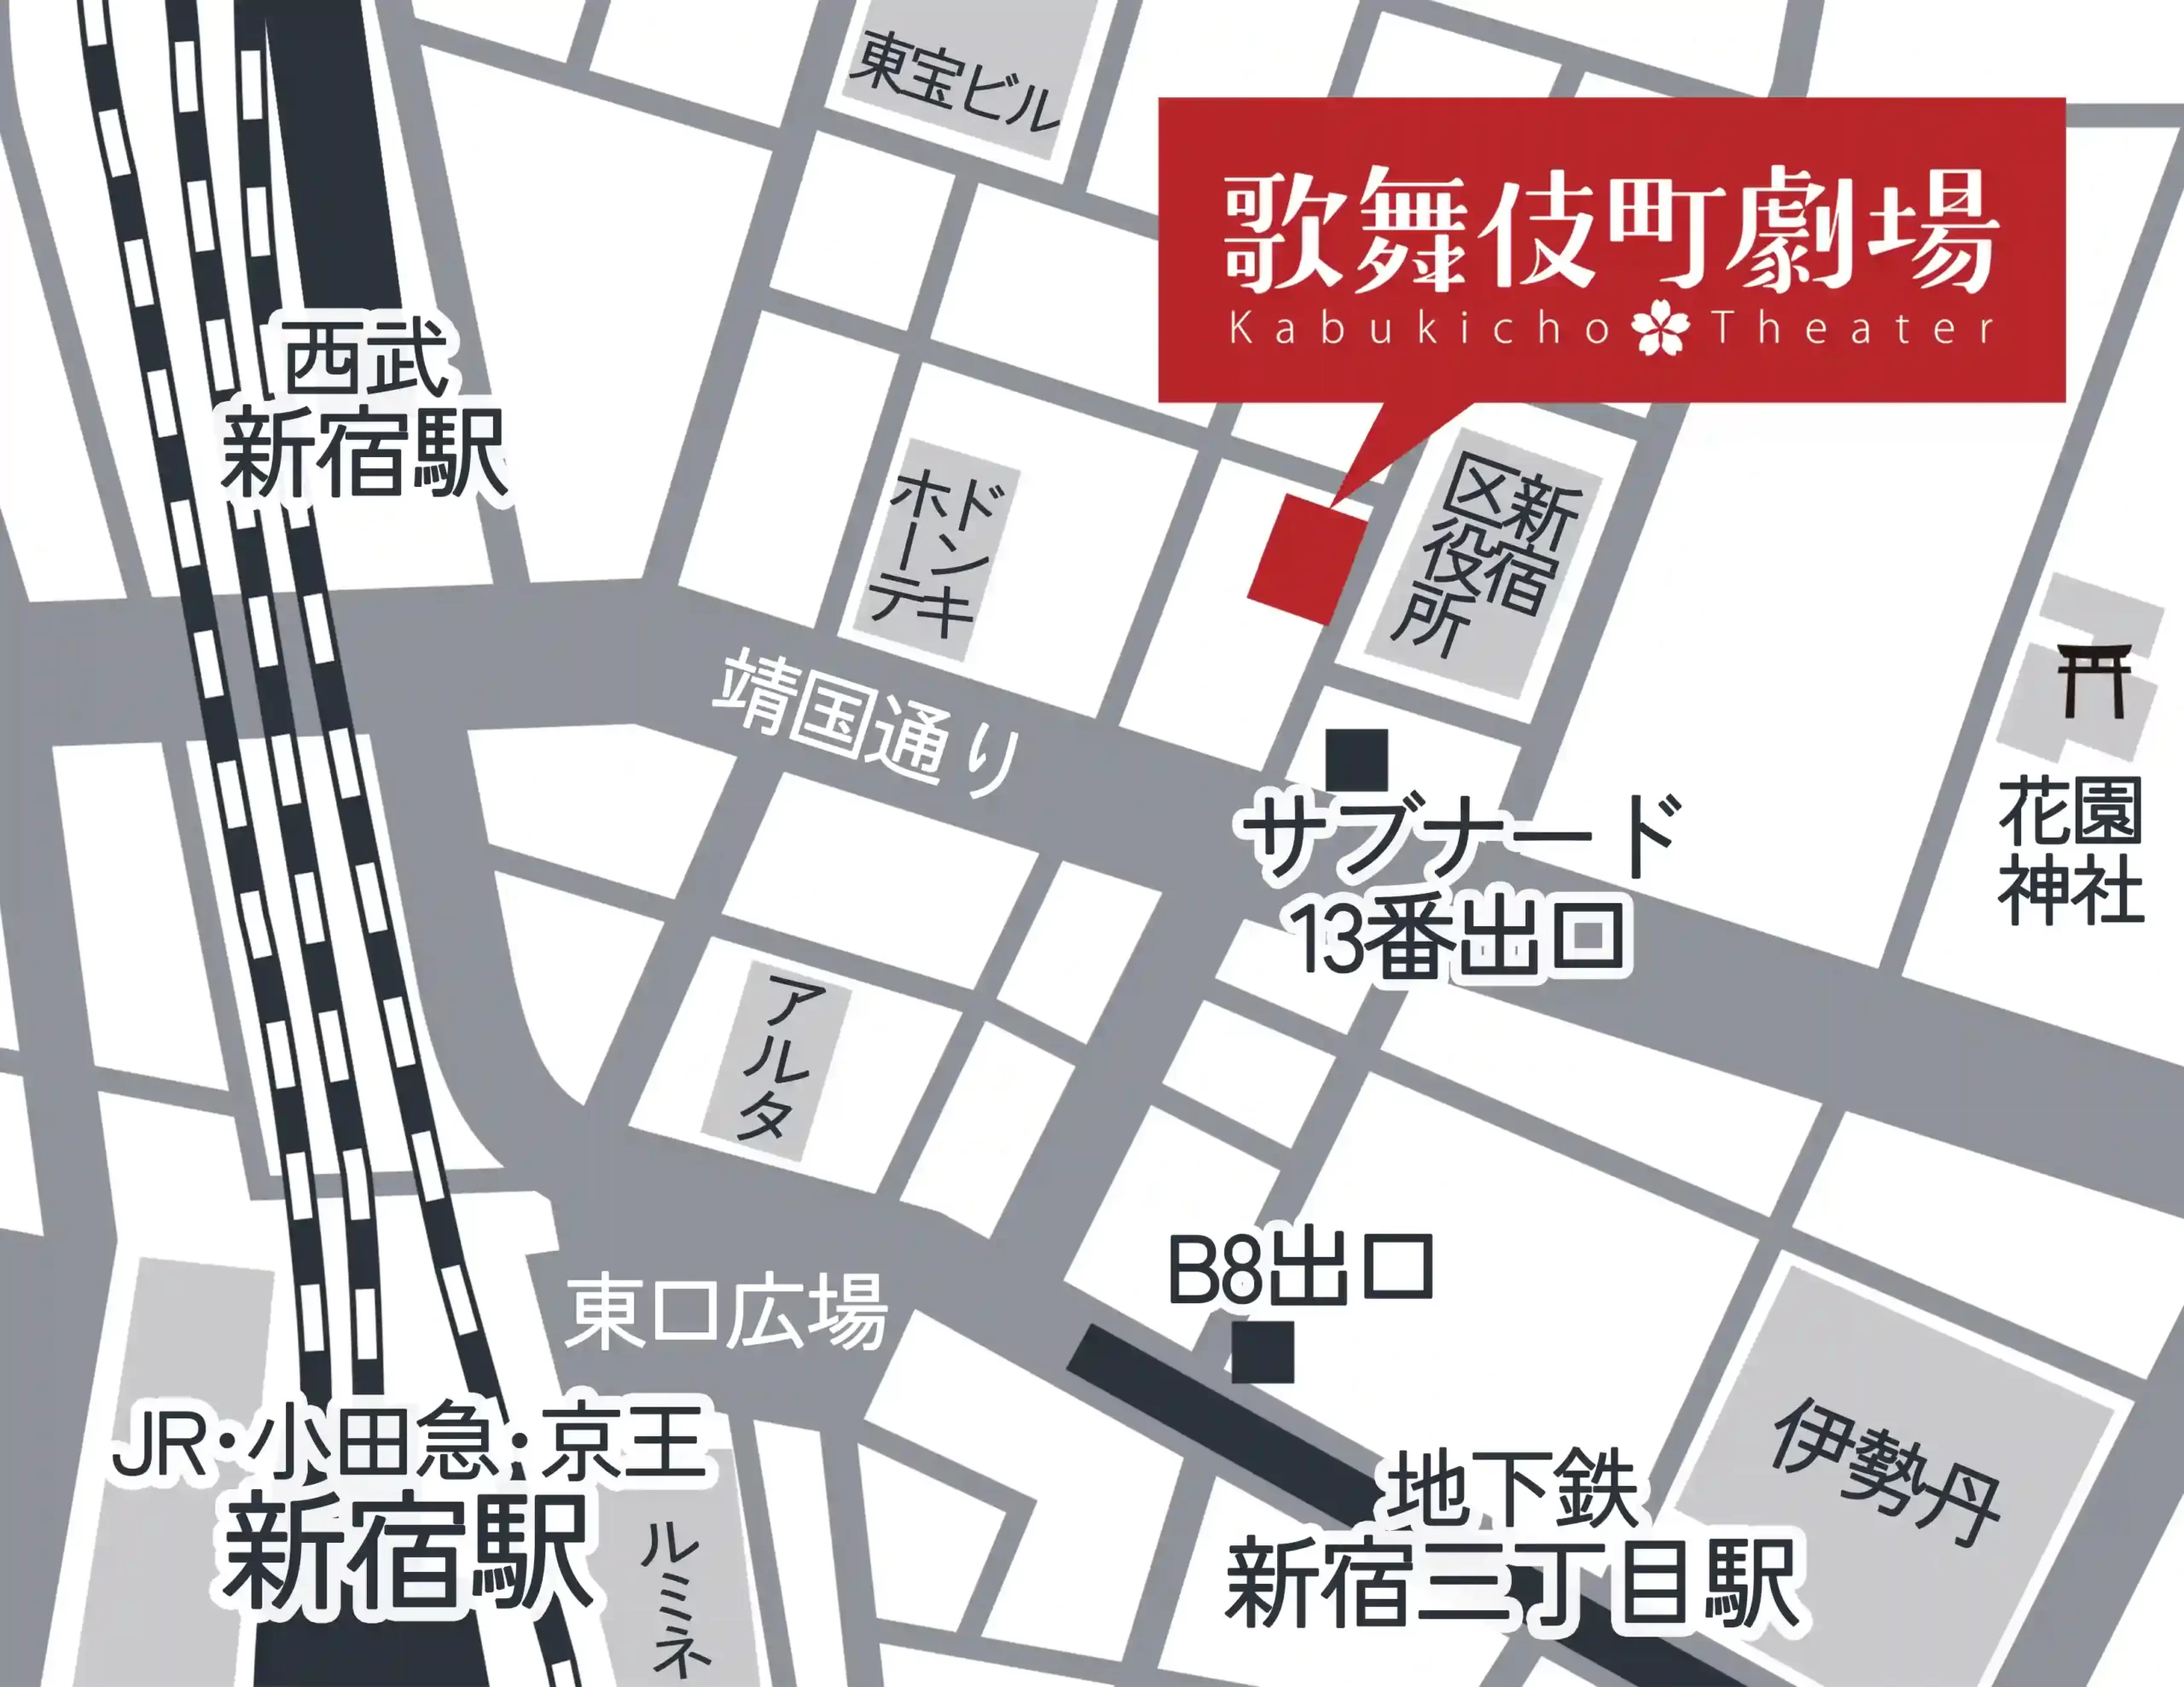 新宿駅から徒歩五分の大衆演劇場「新宿歌舞伎町劇場」アクセスマップ単純版